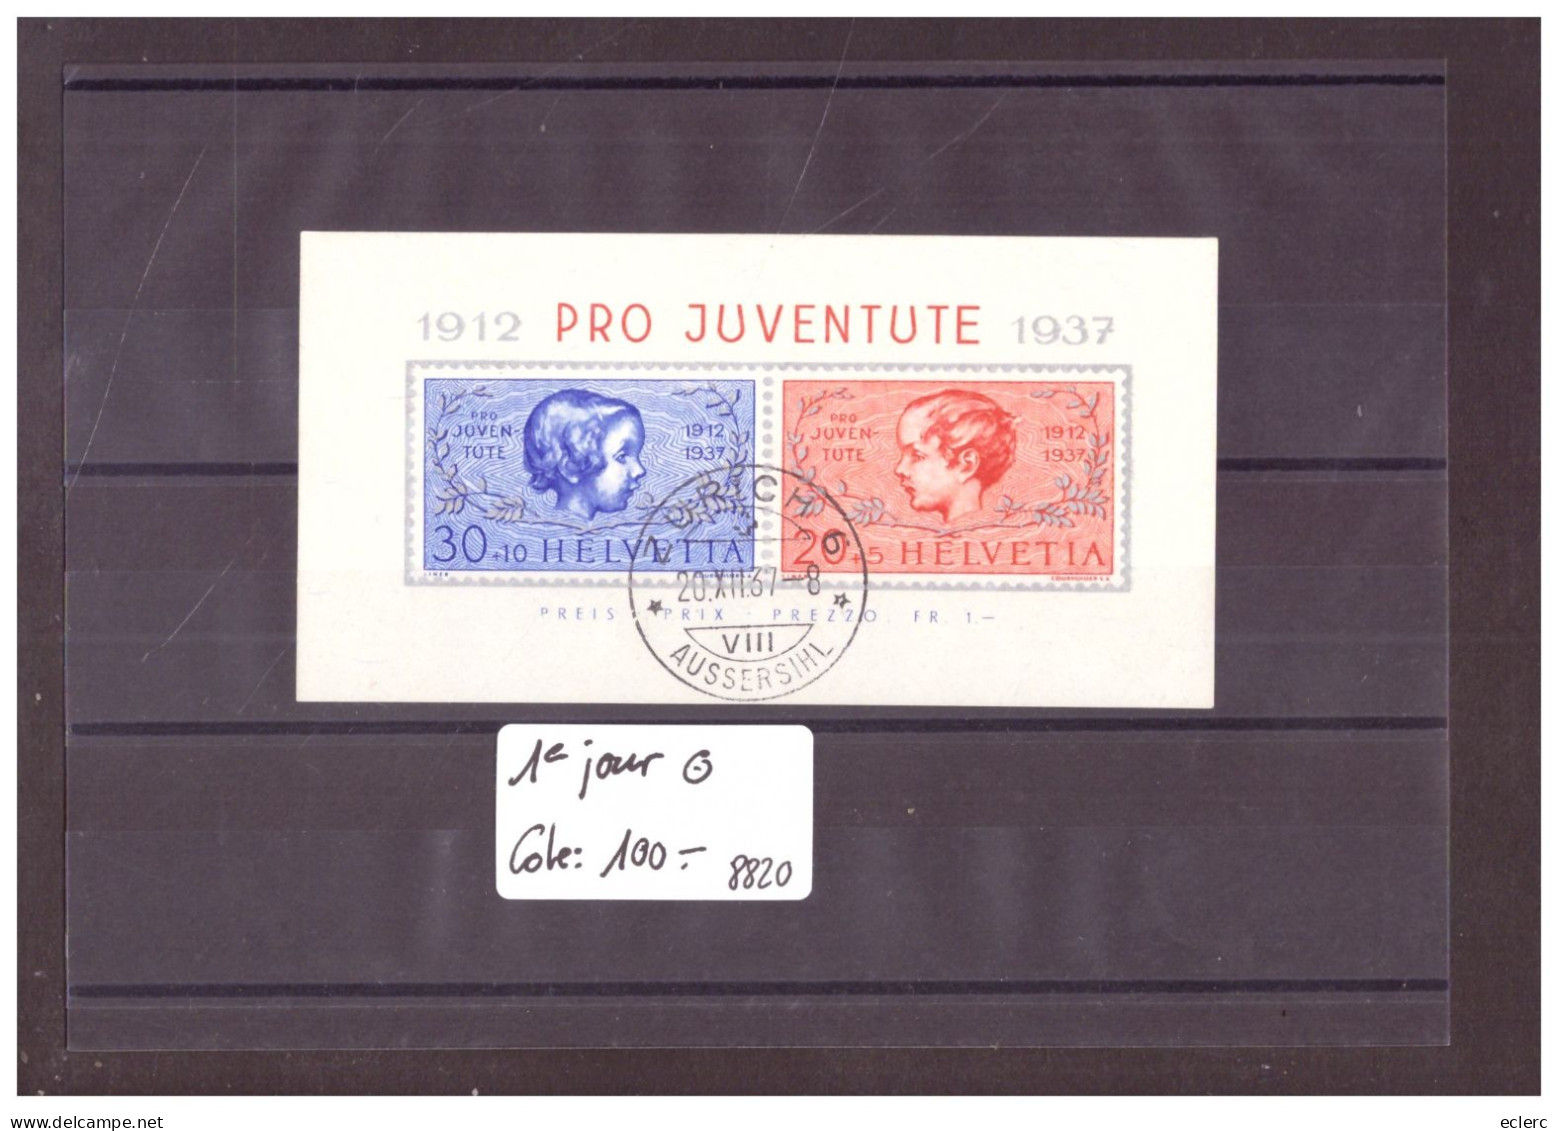 BLOC PRO JUVENTUTE 1937 OBLITERE PREMIER JOUR  - COTE: 100.- - Blocchi & Foglietti